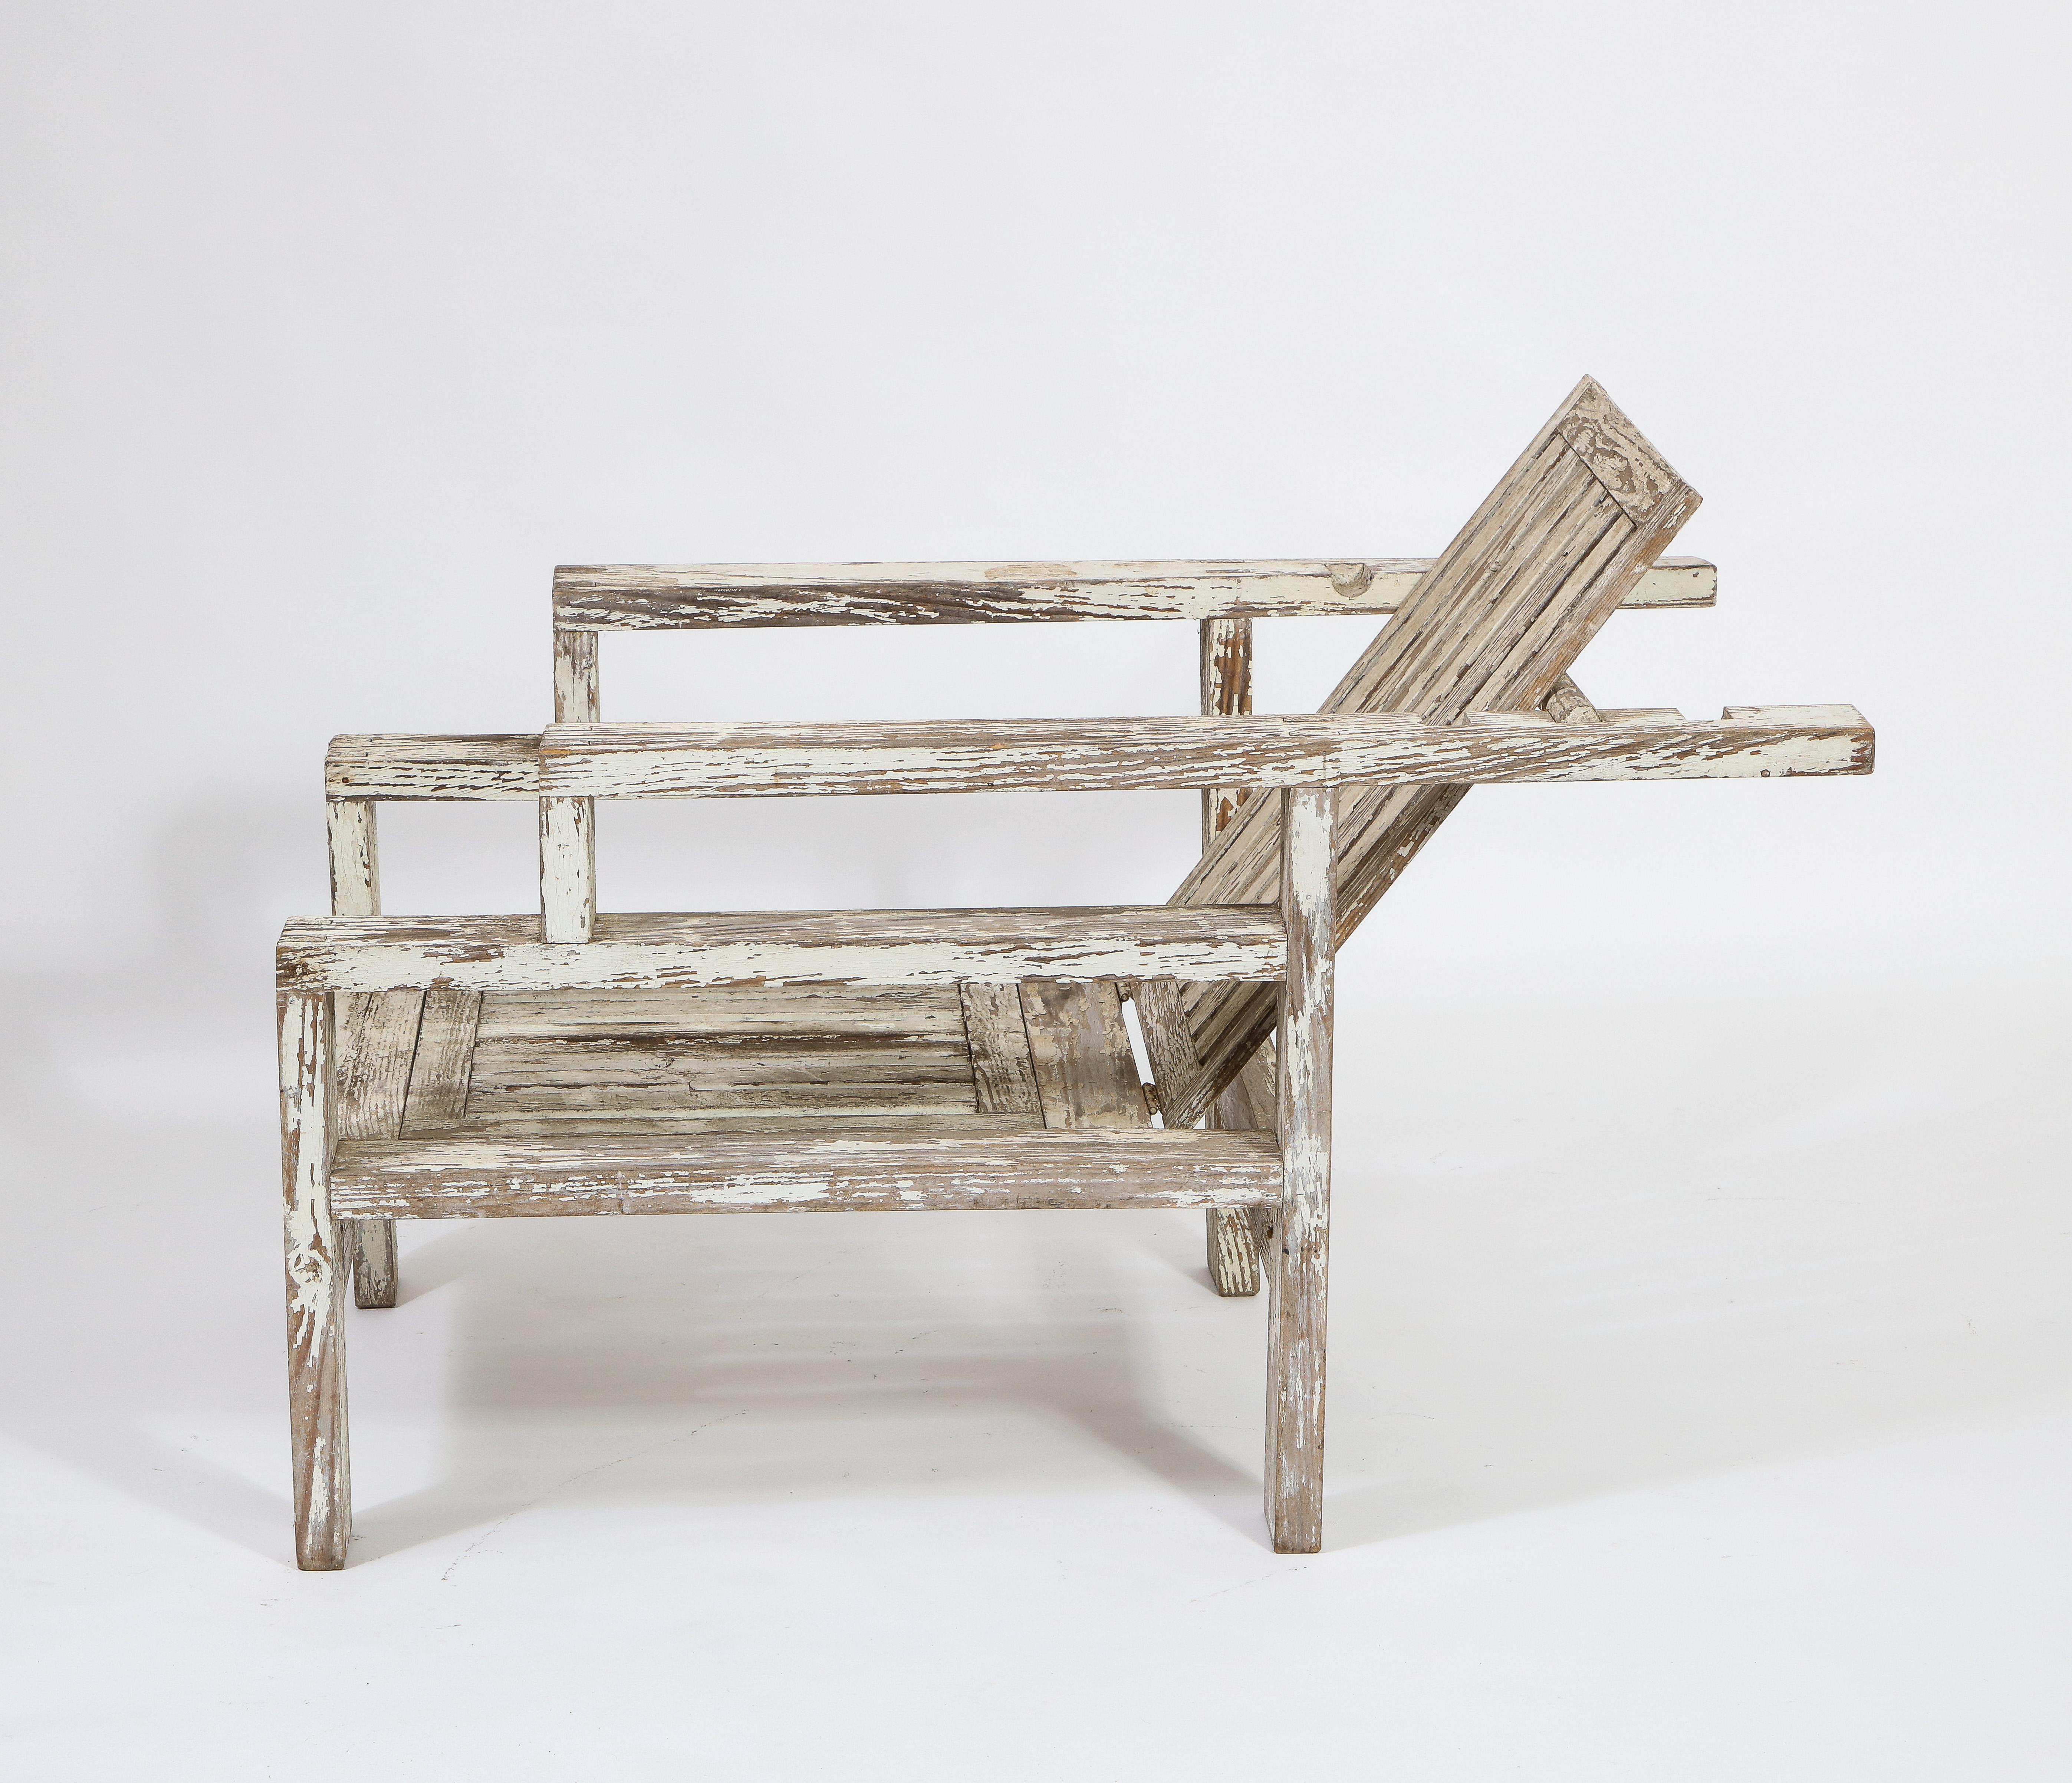 Robert Mallet-Stevens ist bekannt für seine strengen, klaren Art-Déco-Linien. Der hier vorgestellte Stuhl trägt viel von seiner Formensprache. Die aus dicker Eiche gefertigten und mit Zapfenlöchern versehenen Rückenlehnen sind über eine bewegliche